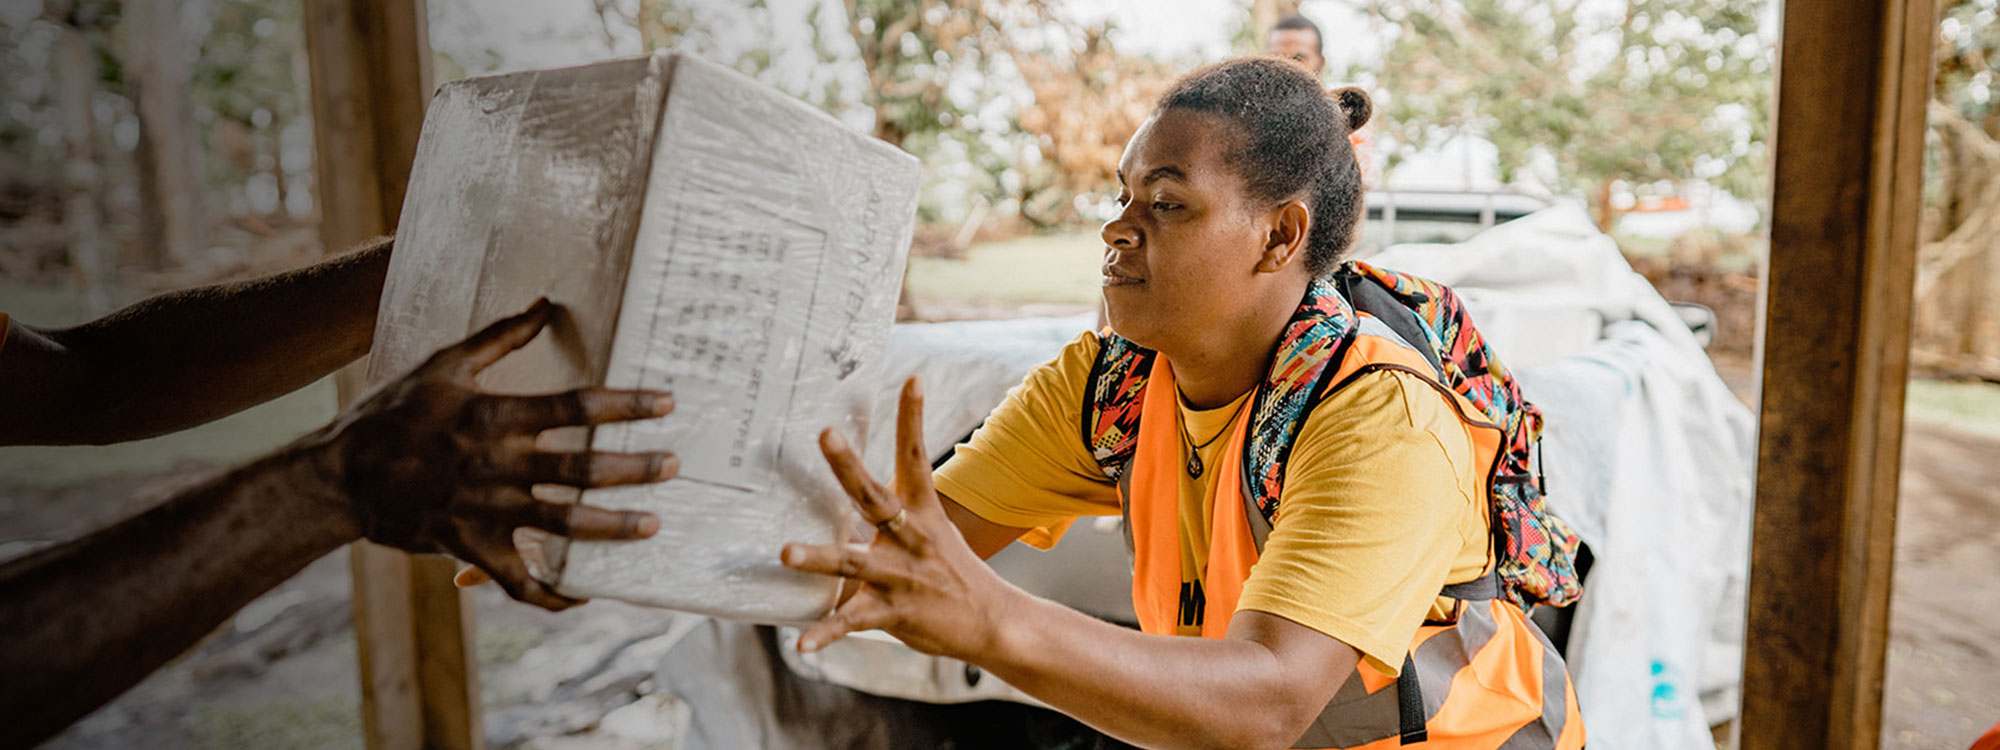 Woman passes aid box in Vanuatu